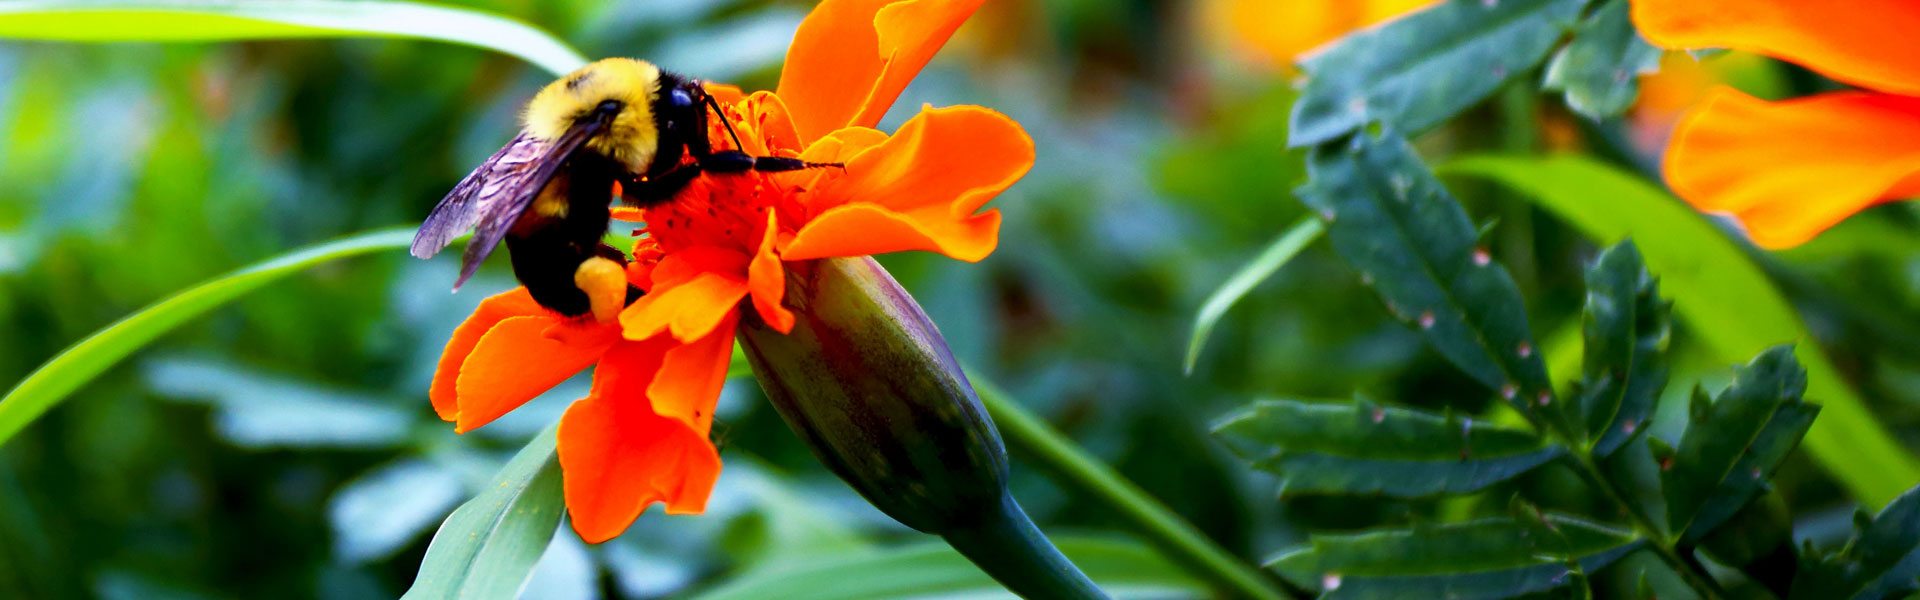 Photo d'une abeille butinant une fleur